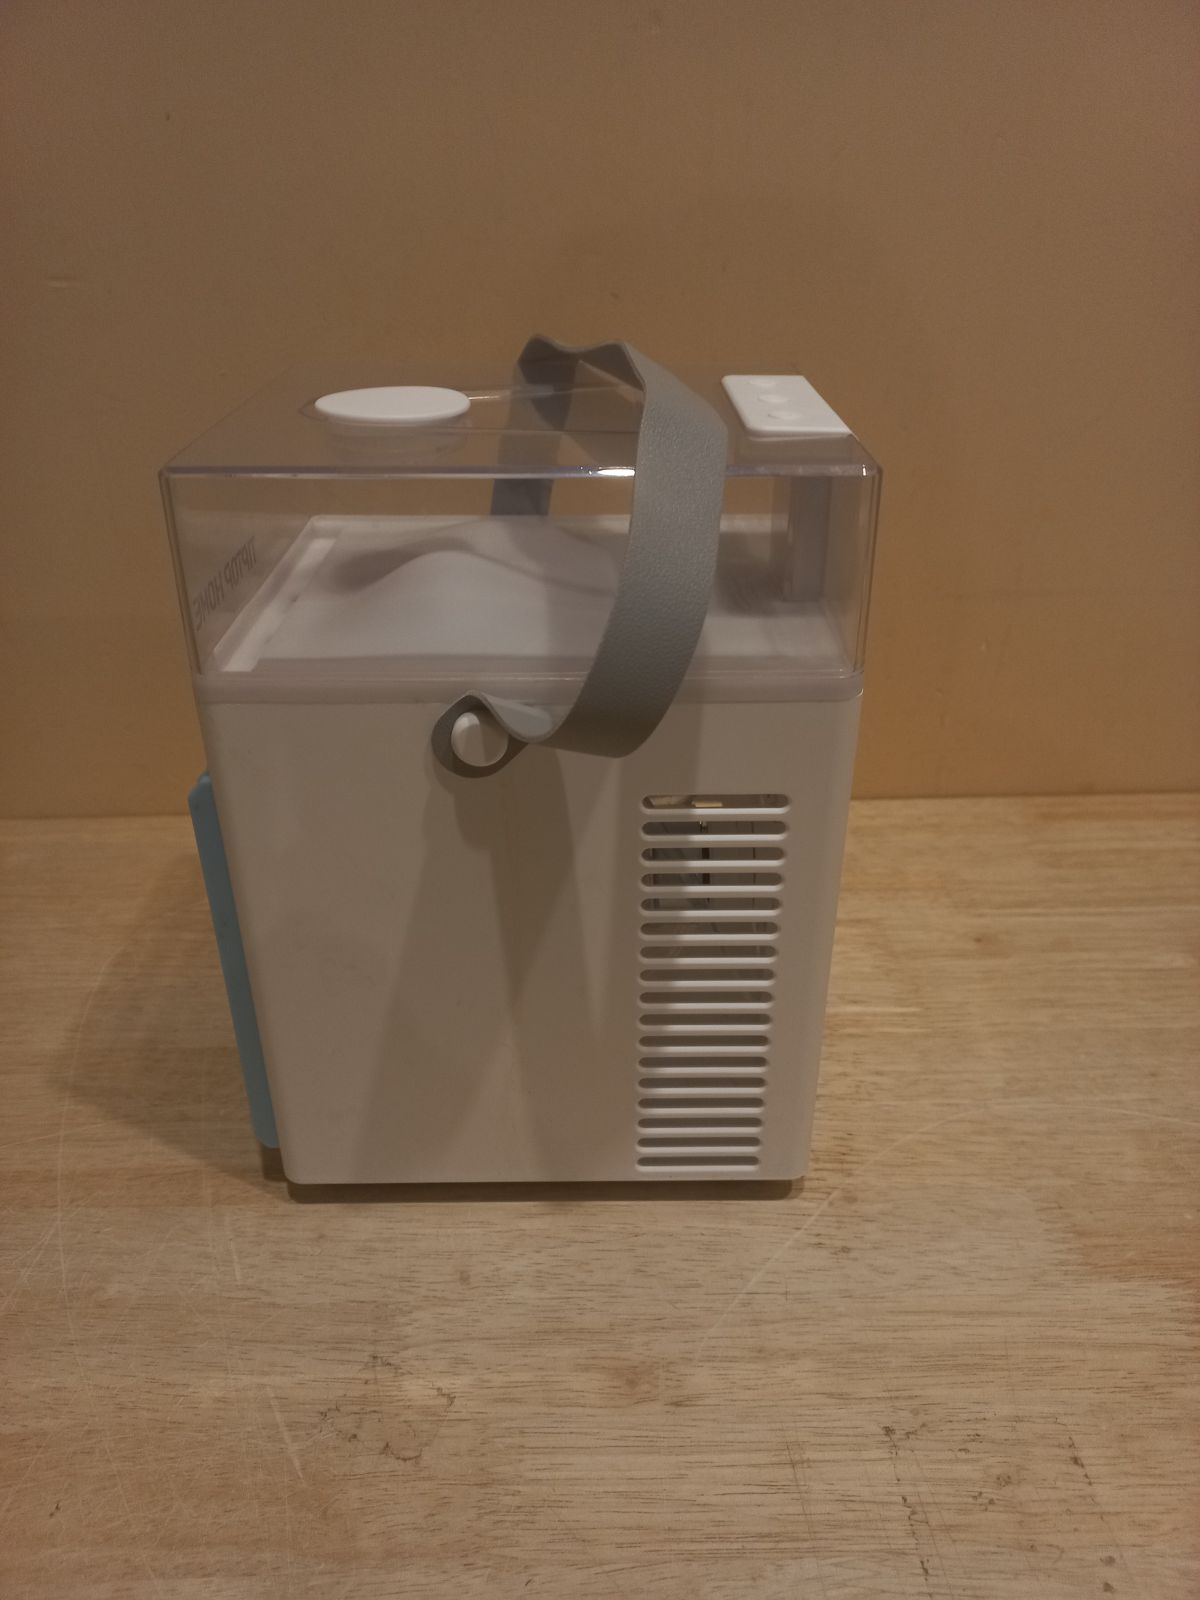 Mini air conditioner, fan